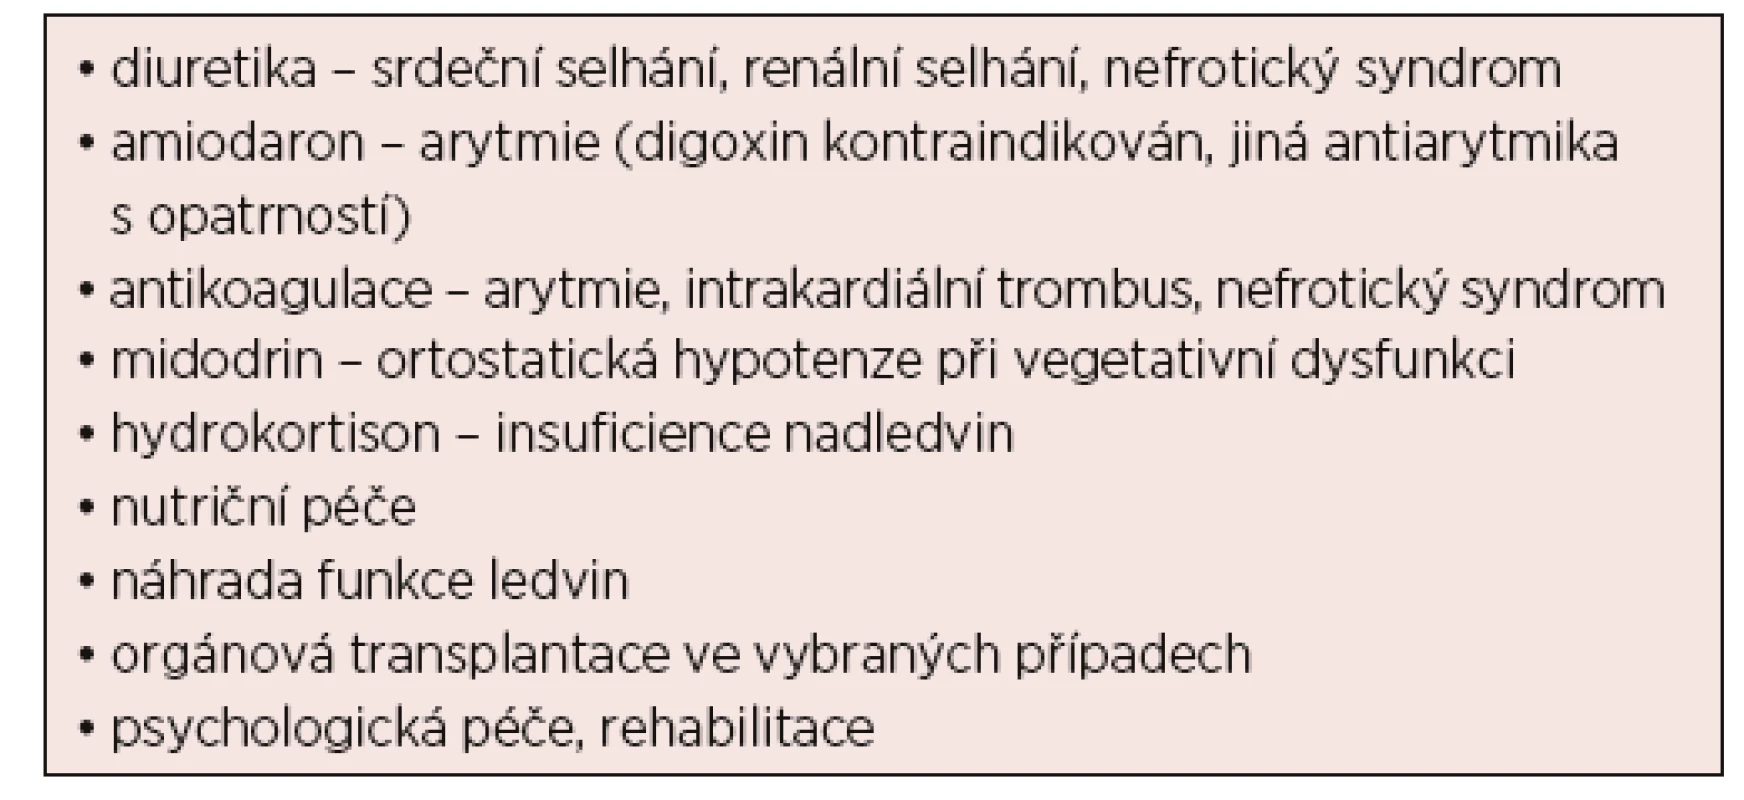 Podpůrná terapie u nemocných s AL amyloidózou (upraveno
podle [Dispenzieri, 2015; Palladini, 2016])